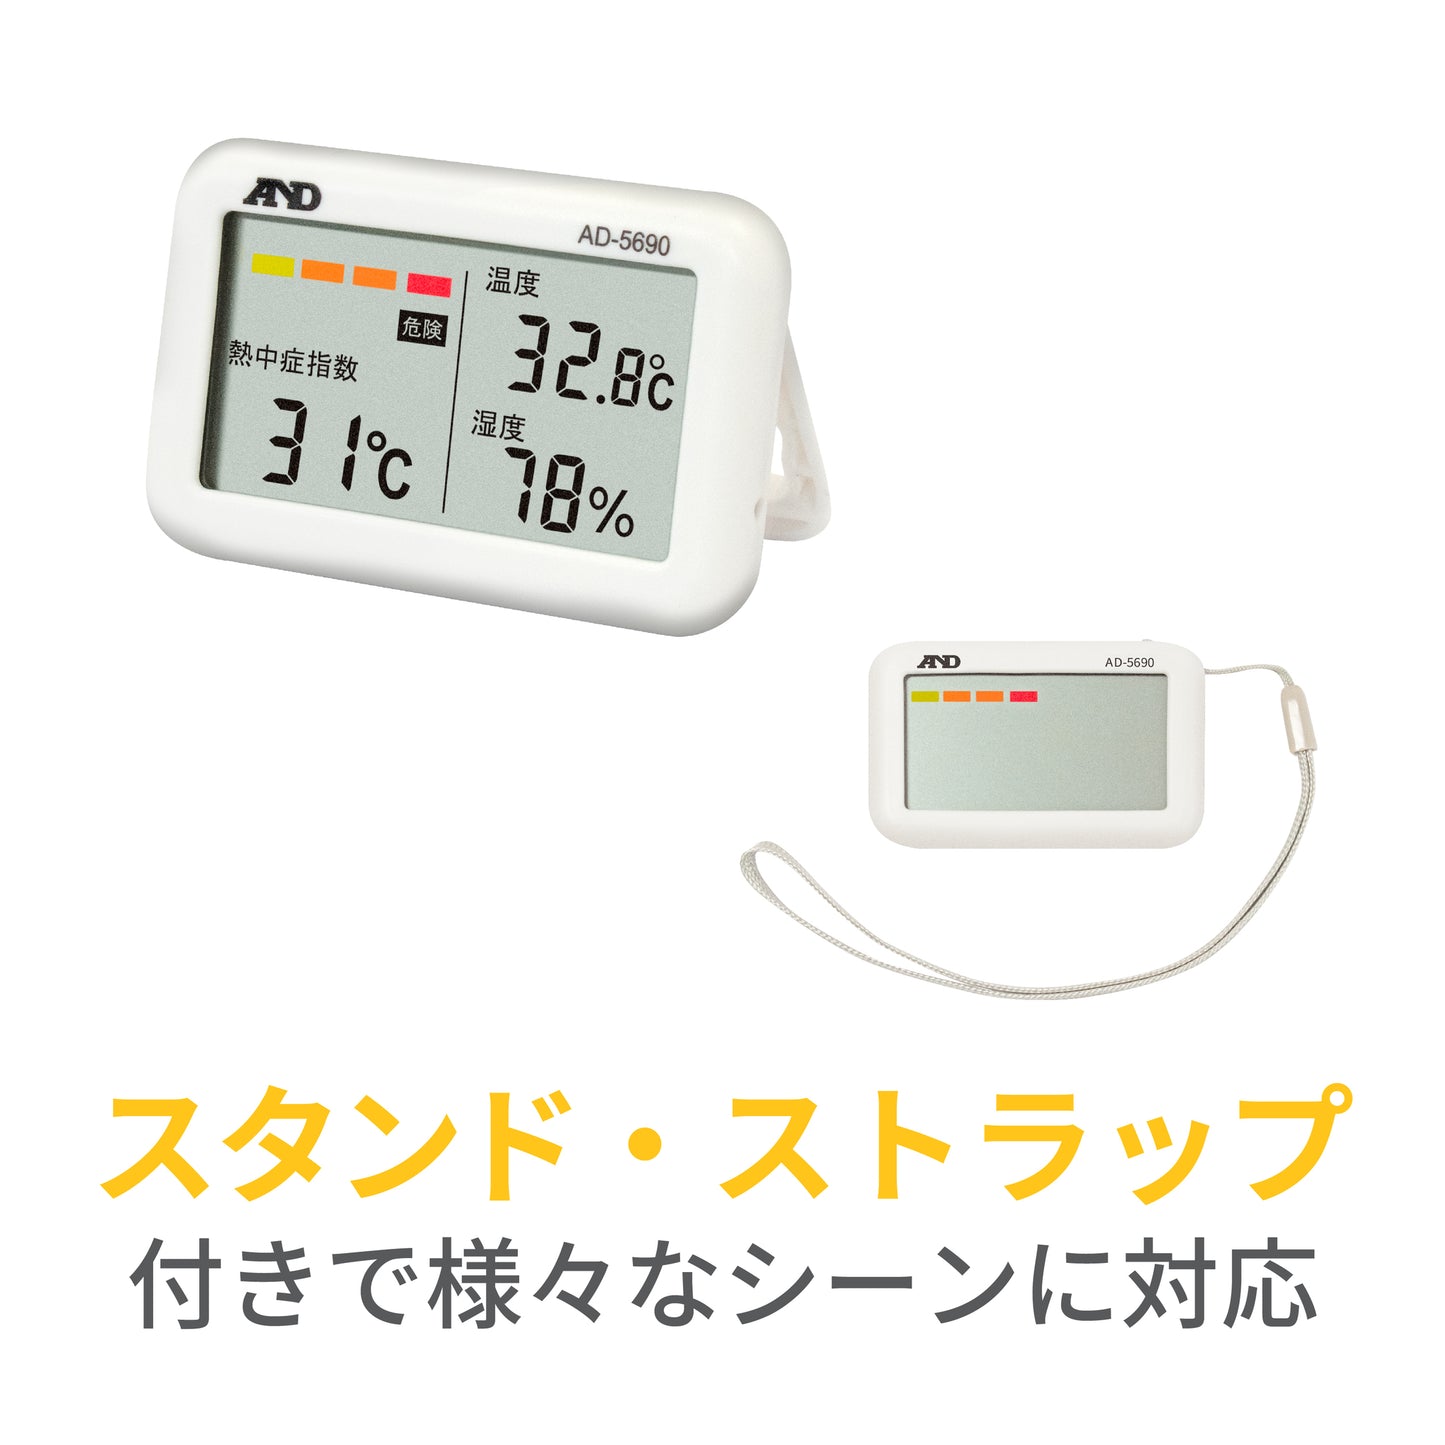 熱中症指数計 / 熱中症指数モニター AD-5690（Type A みはりん坊ジュニア）